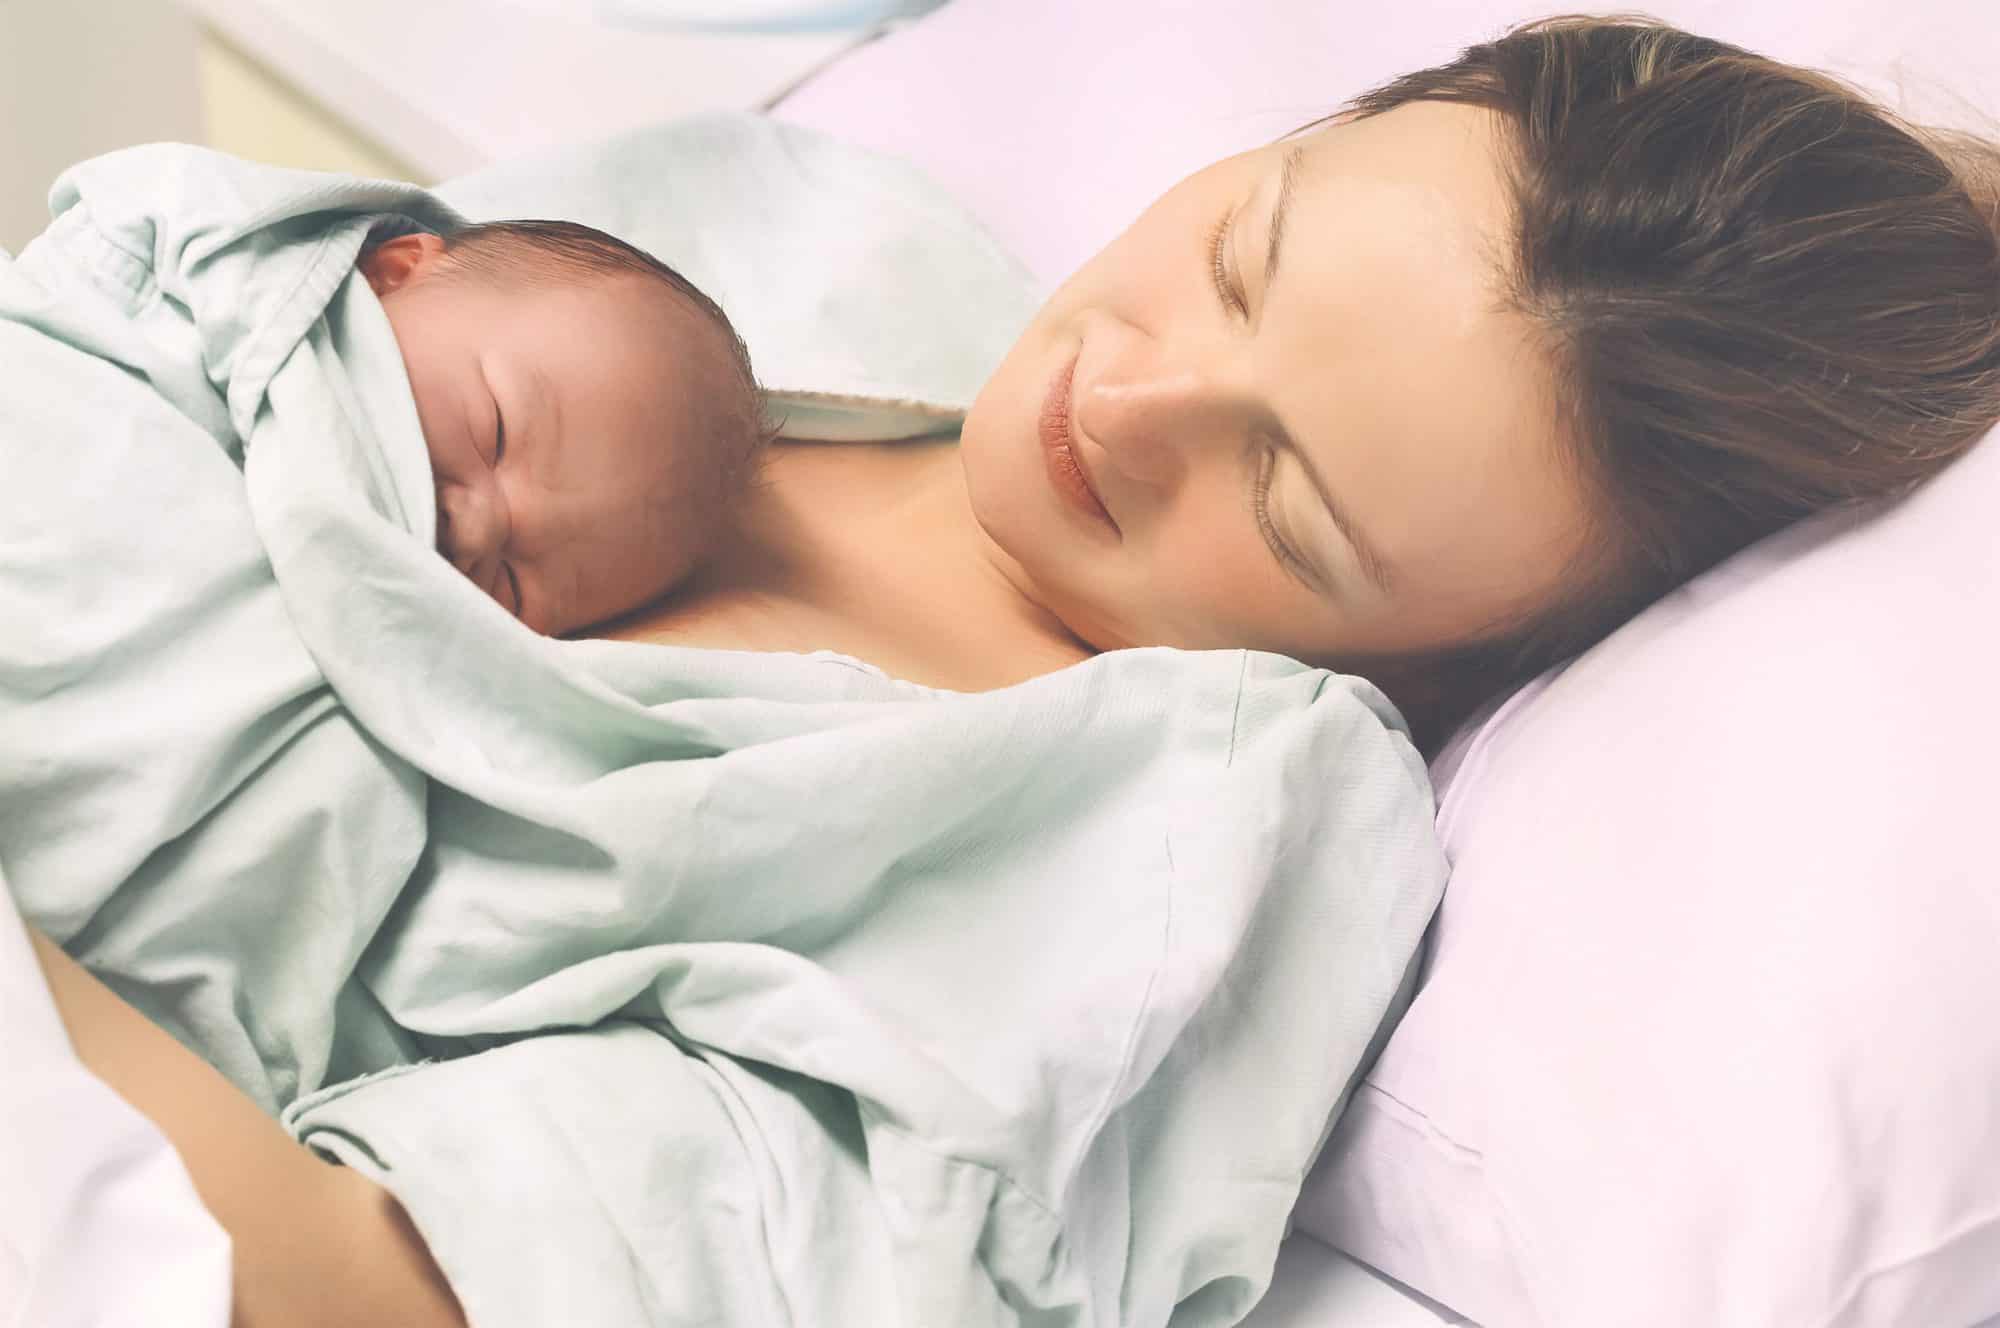 Qué pruebas se le hacen a un recién nacido en paritorio? - CSC